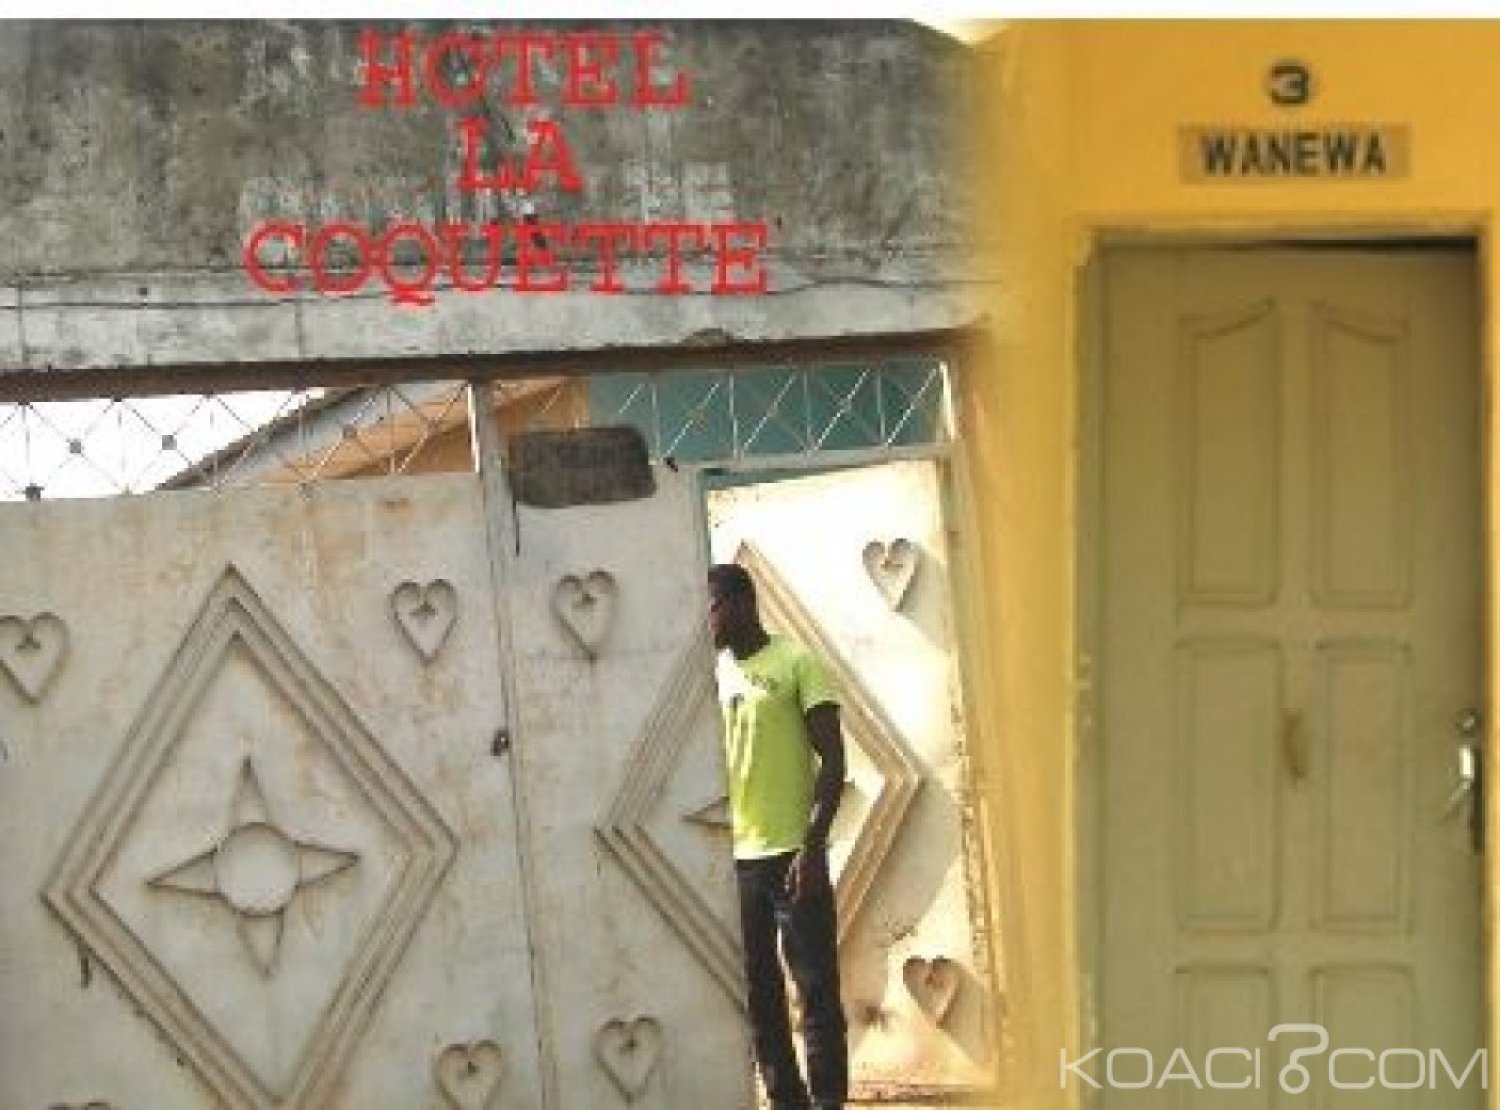 Côte d'Ivoire : En pleins ébats dans un hôtel, un instituteur se fait voler sa moto et refuse de porter plainte